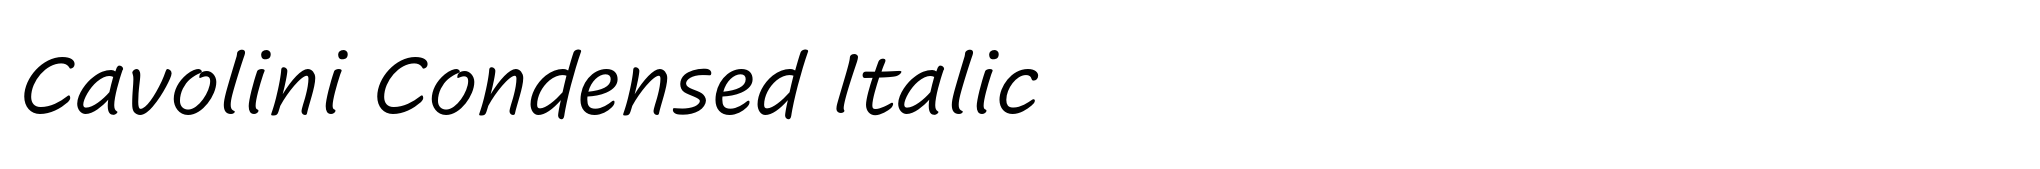 Cavolini Condensed Italic image